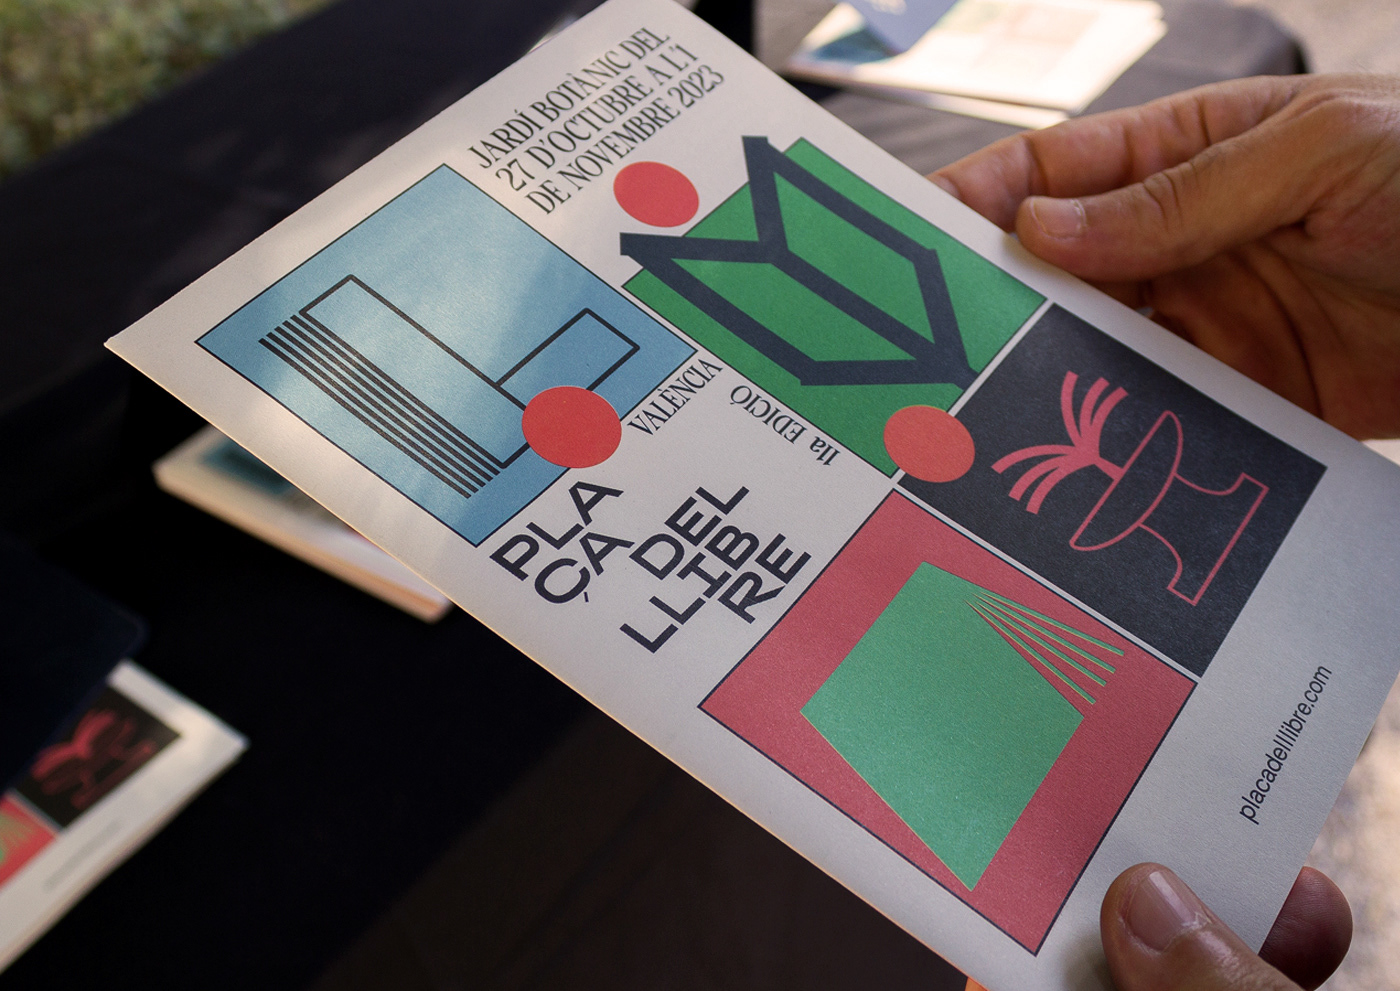 Branding design festival branding books poster Graphic Designer visual identity